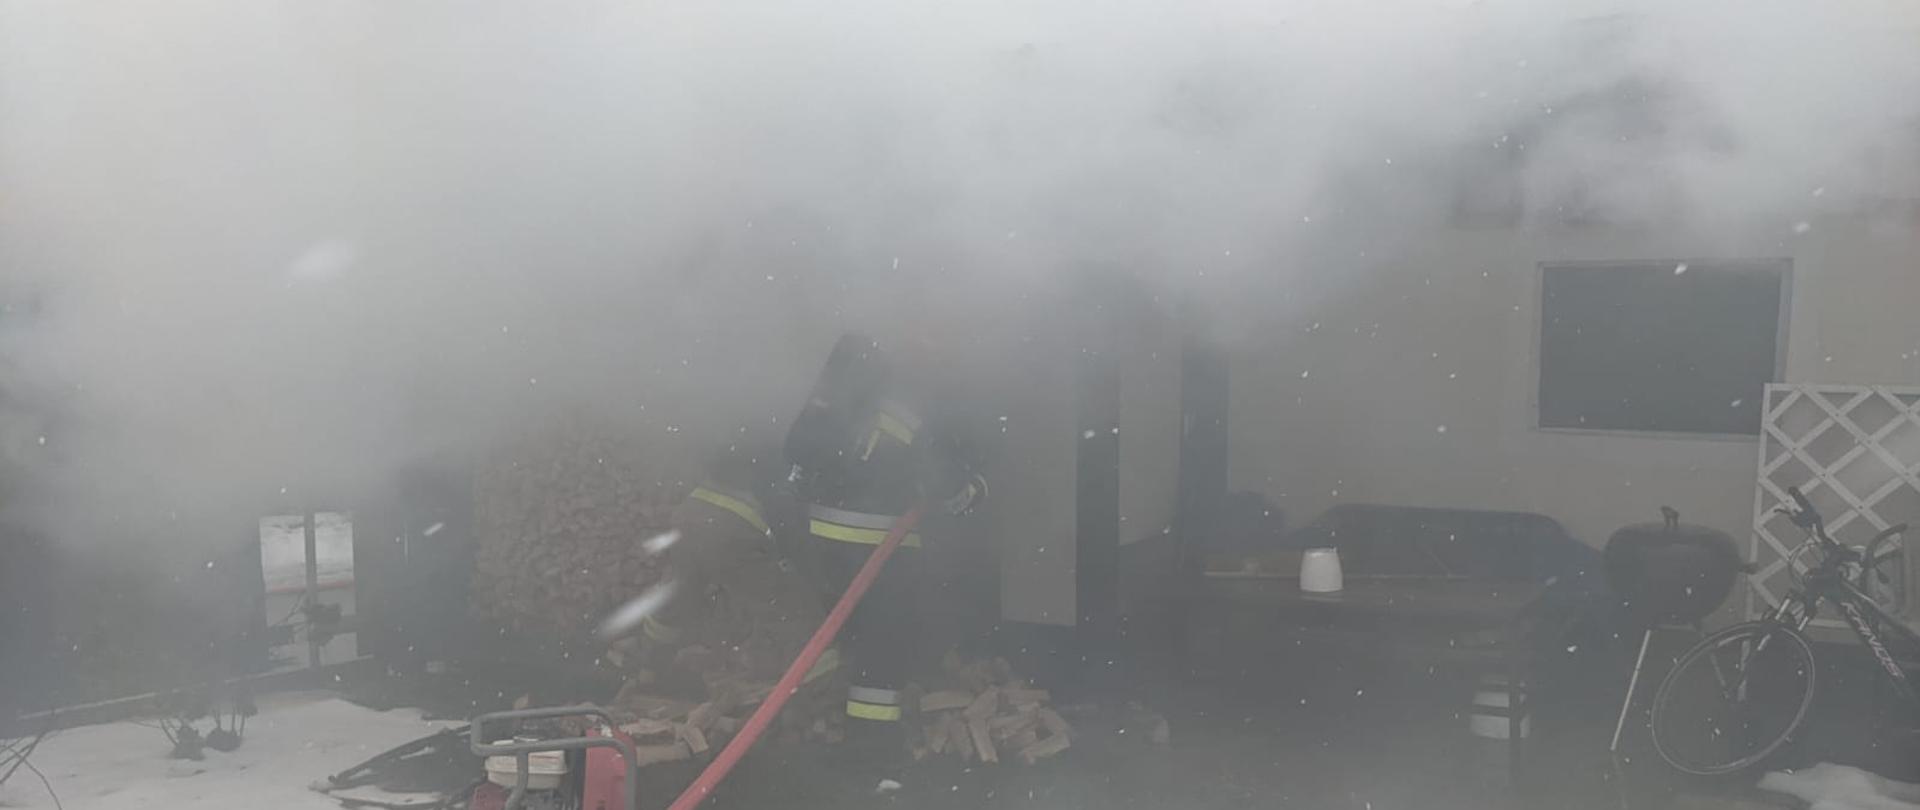 Zdjęcie przedstawia dwóch strażaków (obecnych jeszcze na zewnątrz) wyposażonych w sprzęt ochrony układu oddechowego i linię gaśniczą, podejmujących działania gaśnicze podczas pożaru budynku garażowego. Na obrazie widoczny jest dym wydobywający się z obiektu